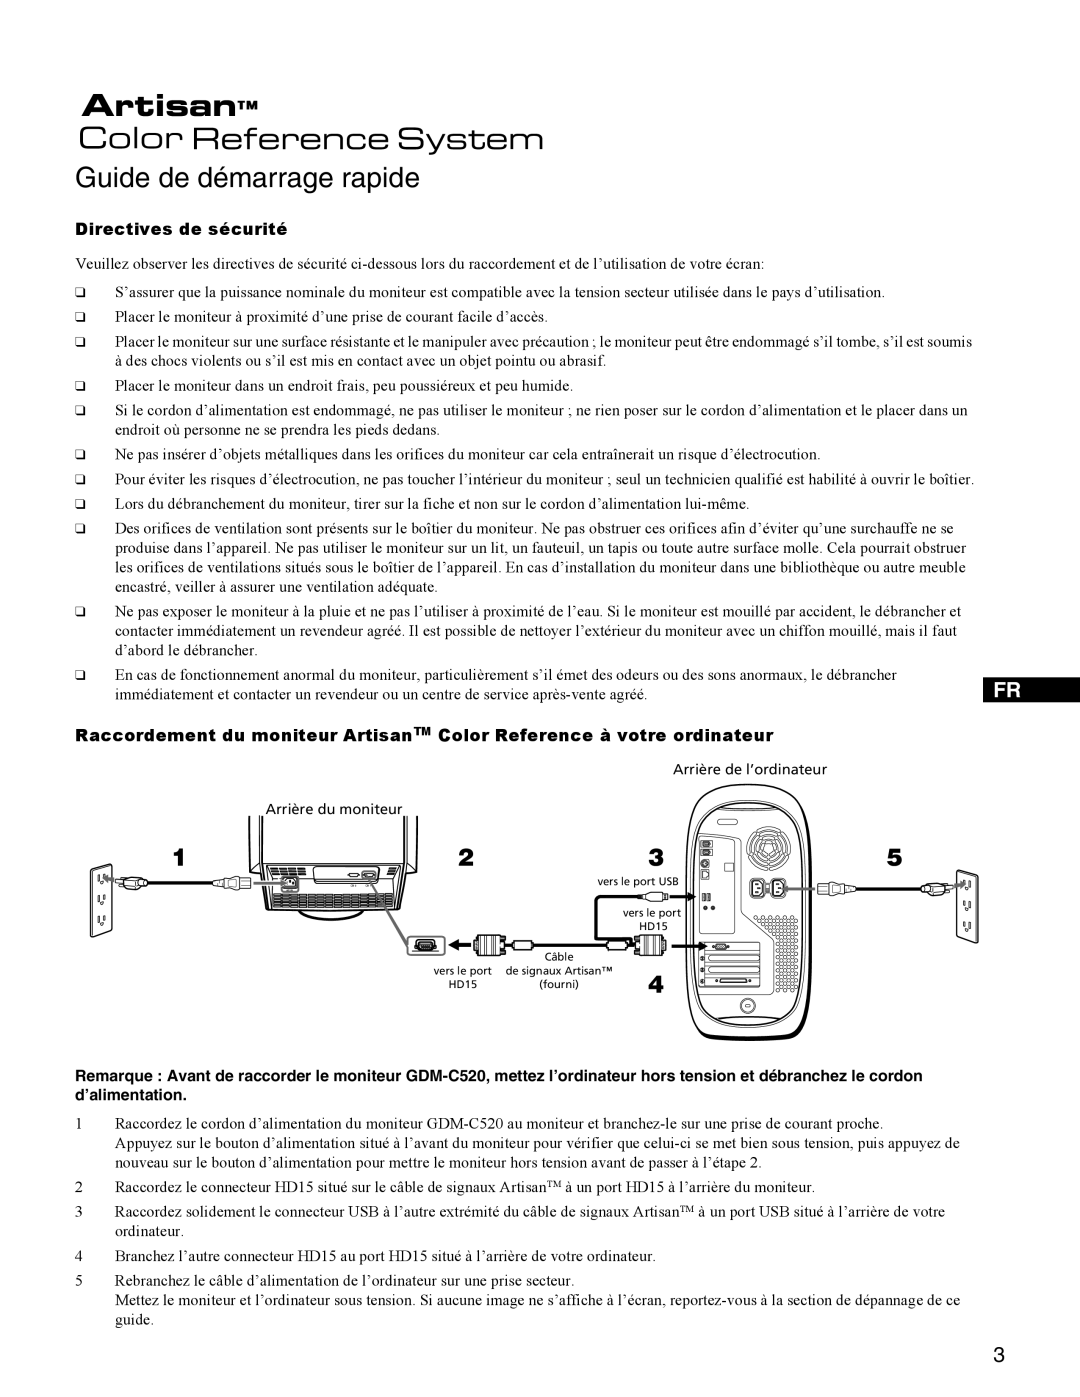 Sony GDM-C250K setup guide Guide de démarrage rapide, Directives de sécurité 